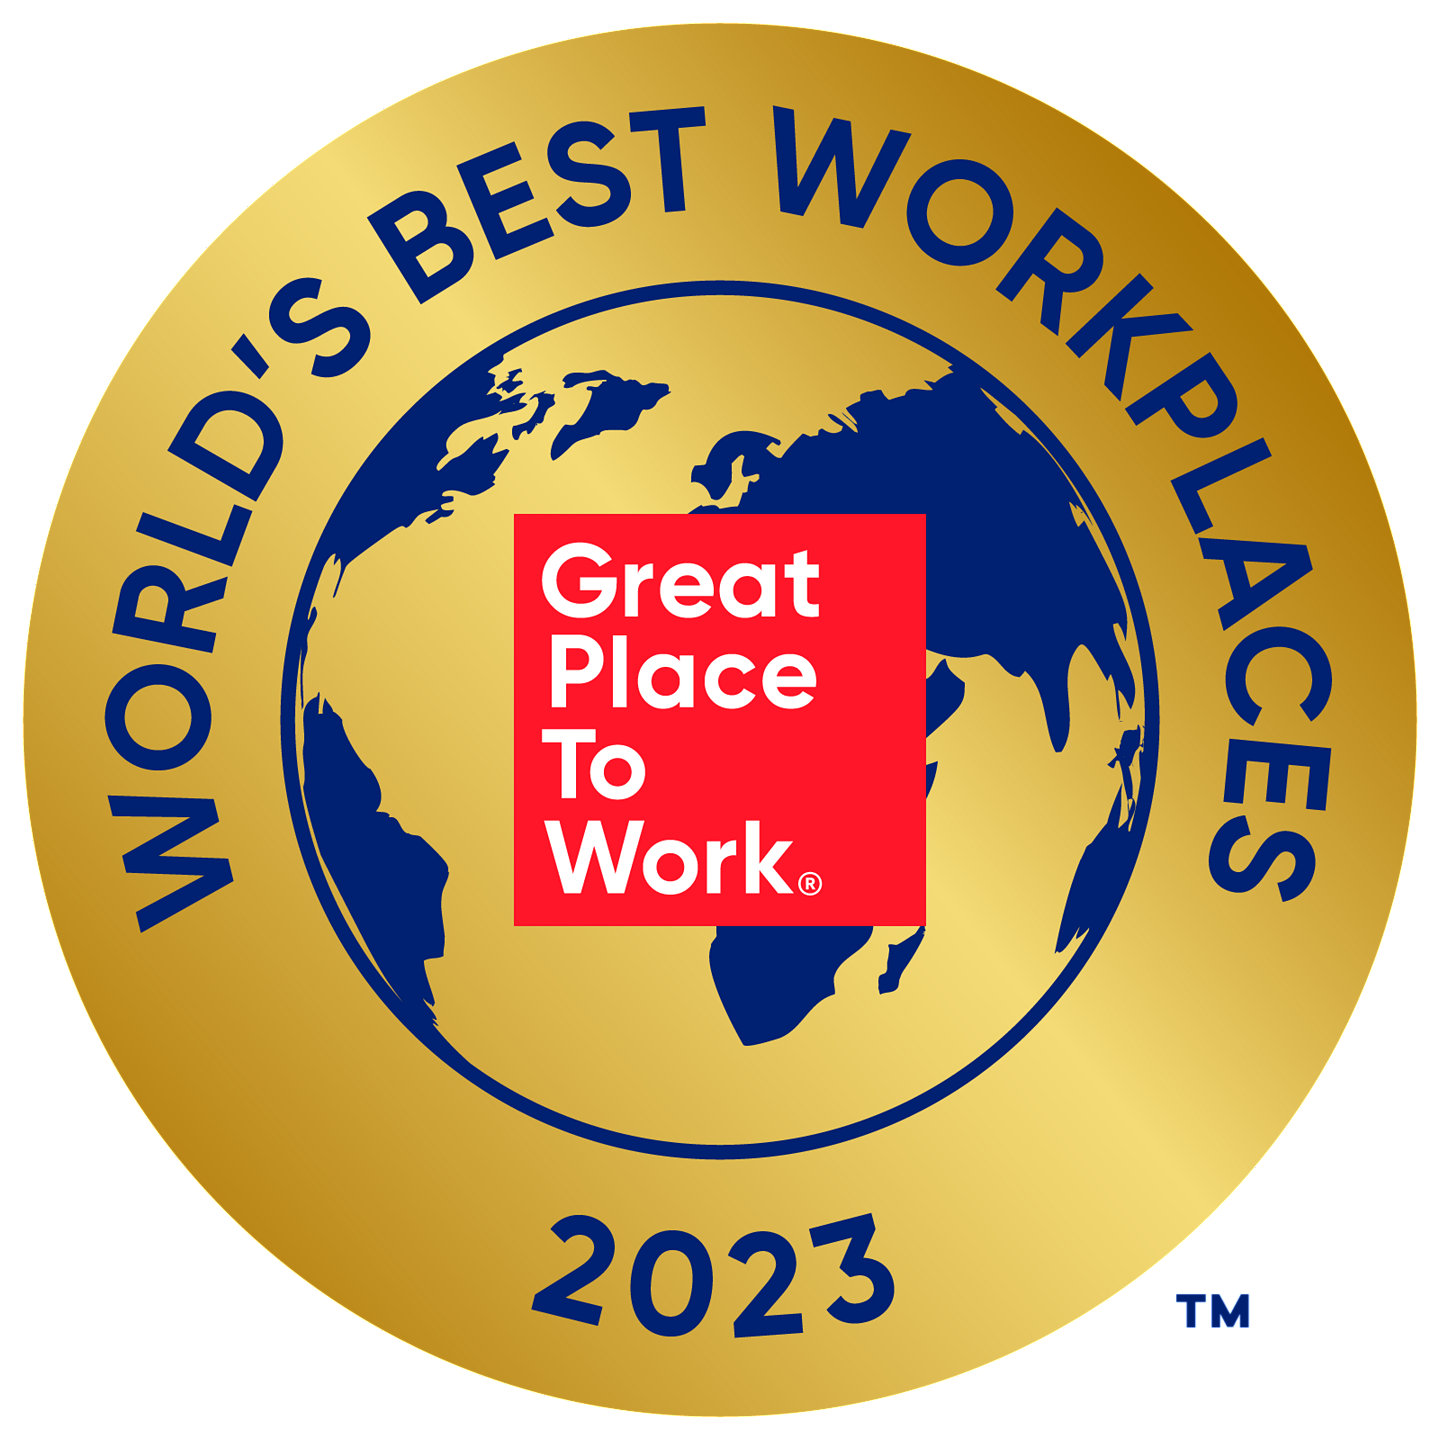 Liste Worlds Best 2023 für World's Best Workplaces